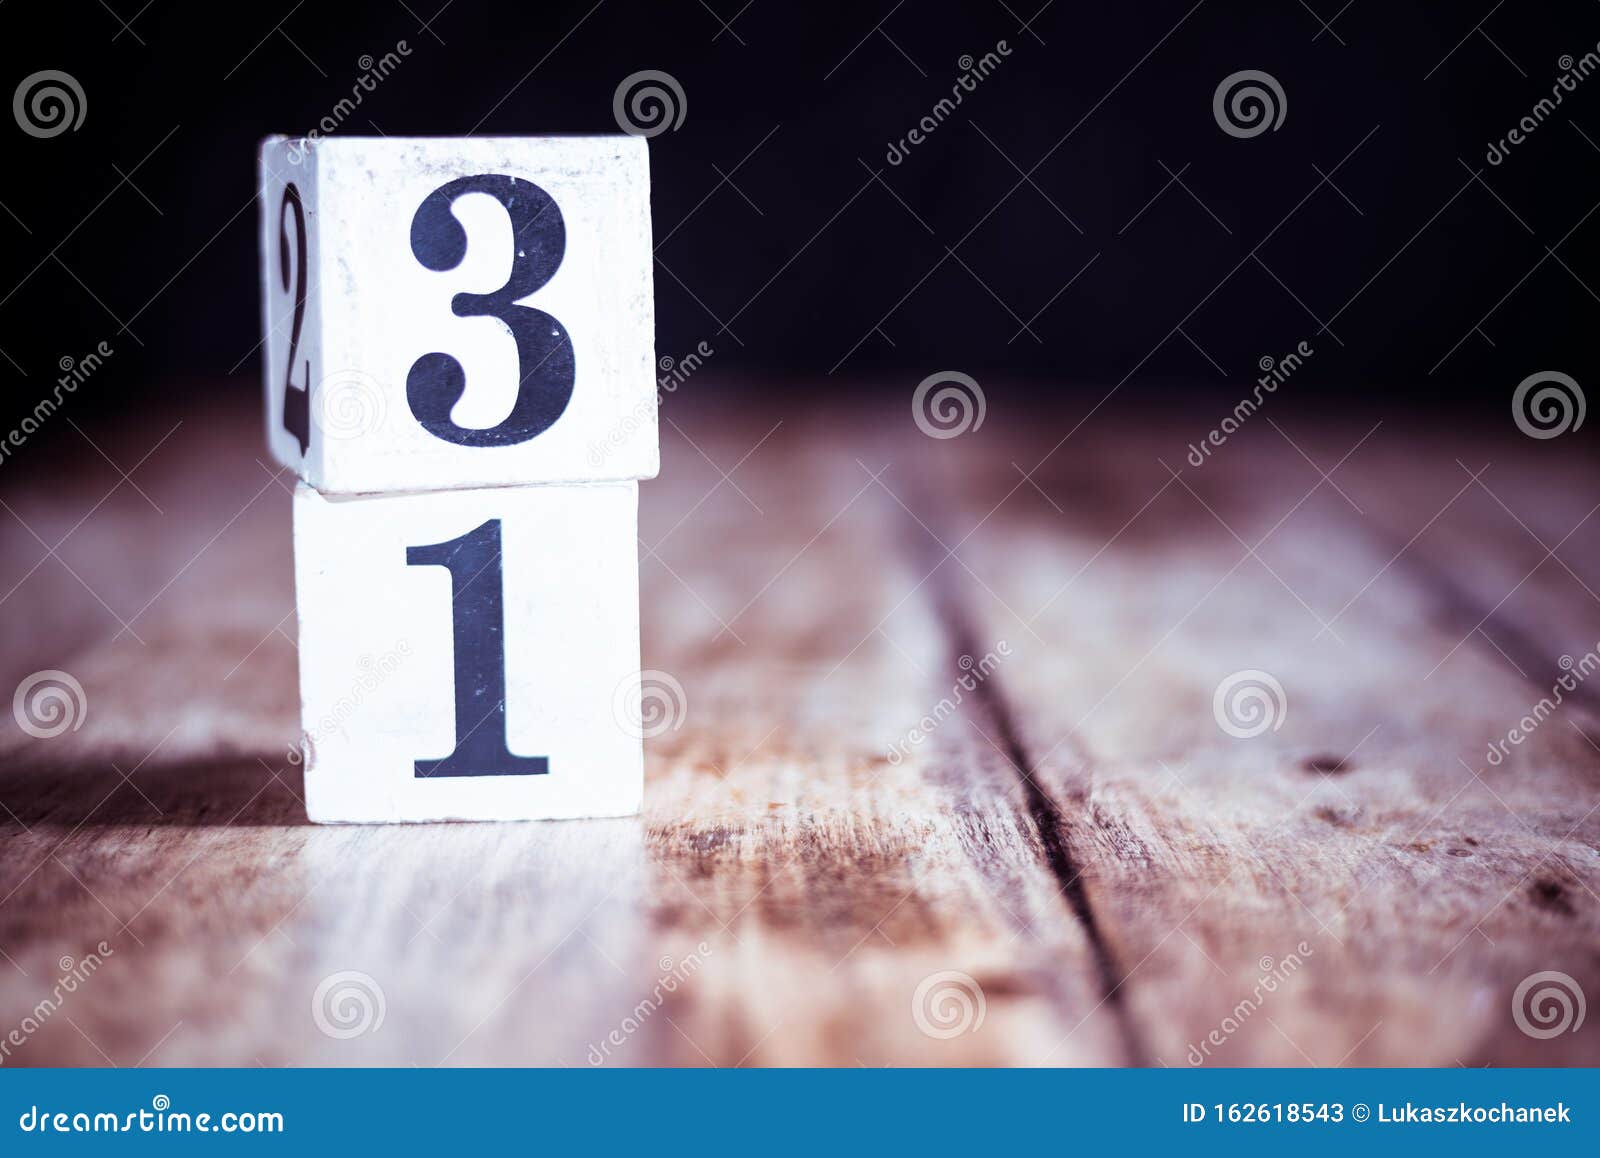 Наше 31 число как напоминание вместо слов. Число 31. Число 31-фото. Число 31 картинка. Тридцать один.